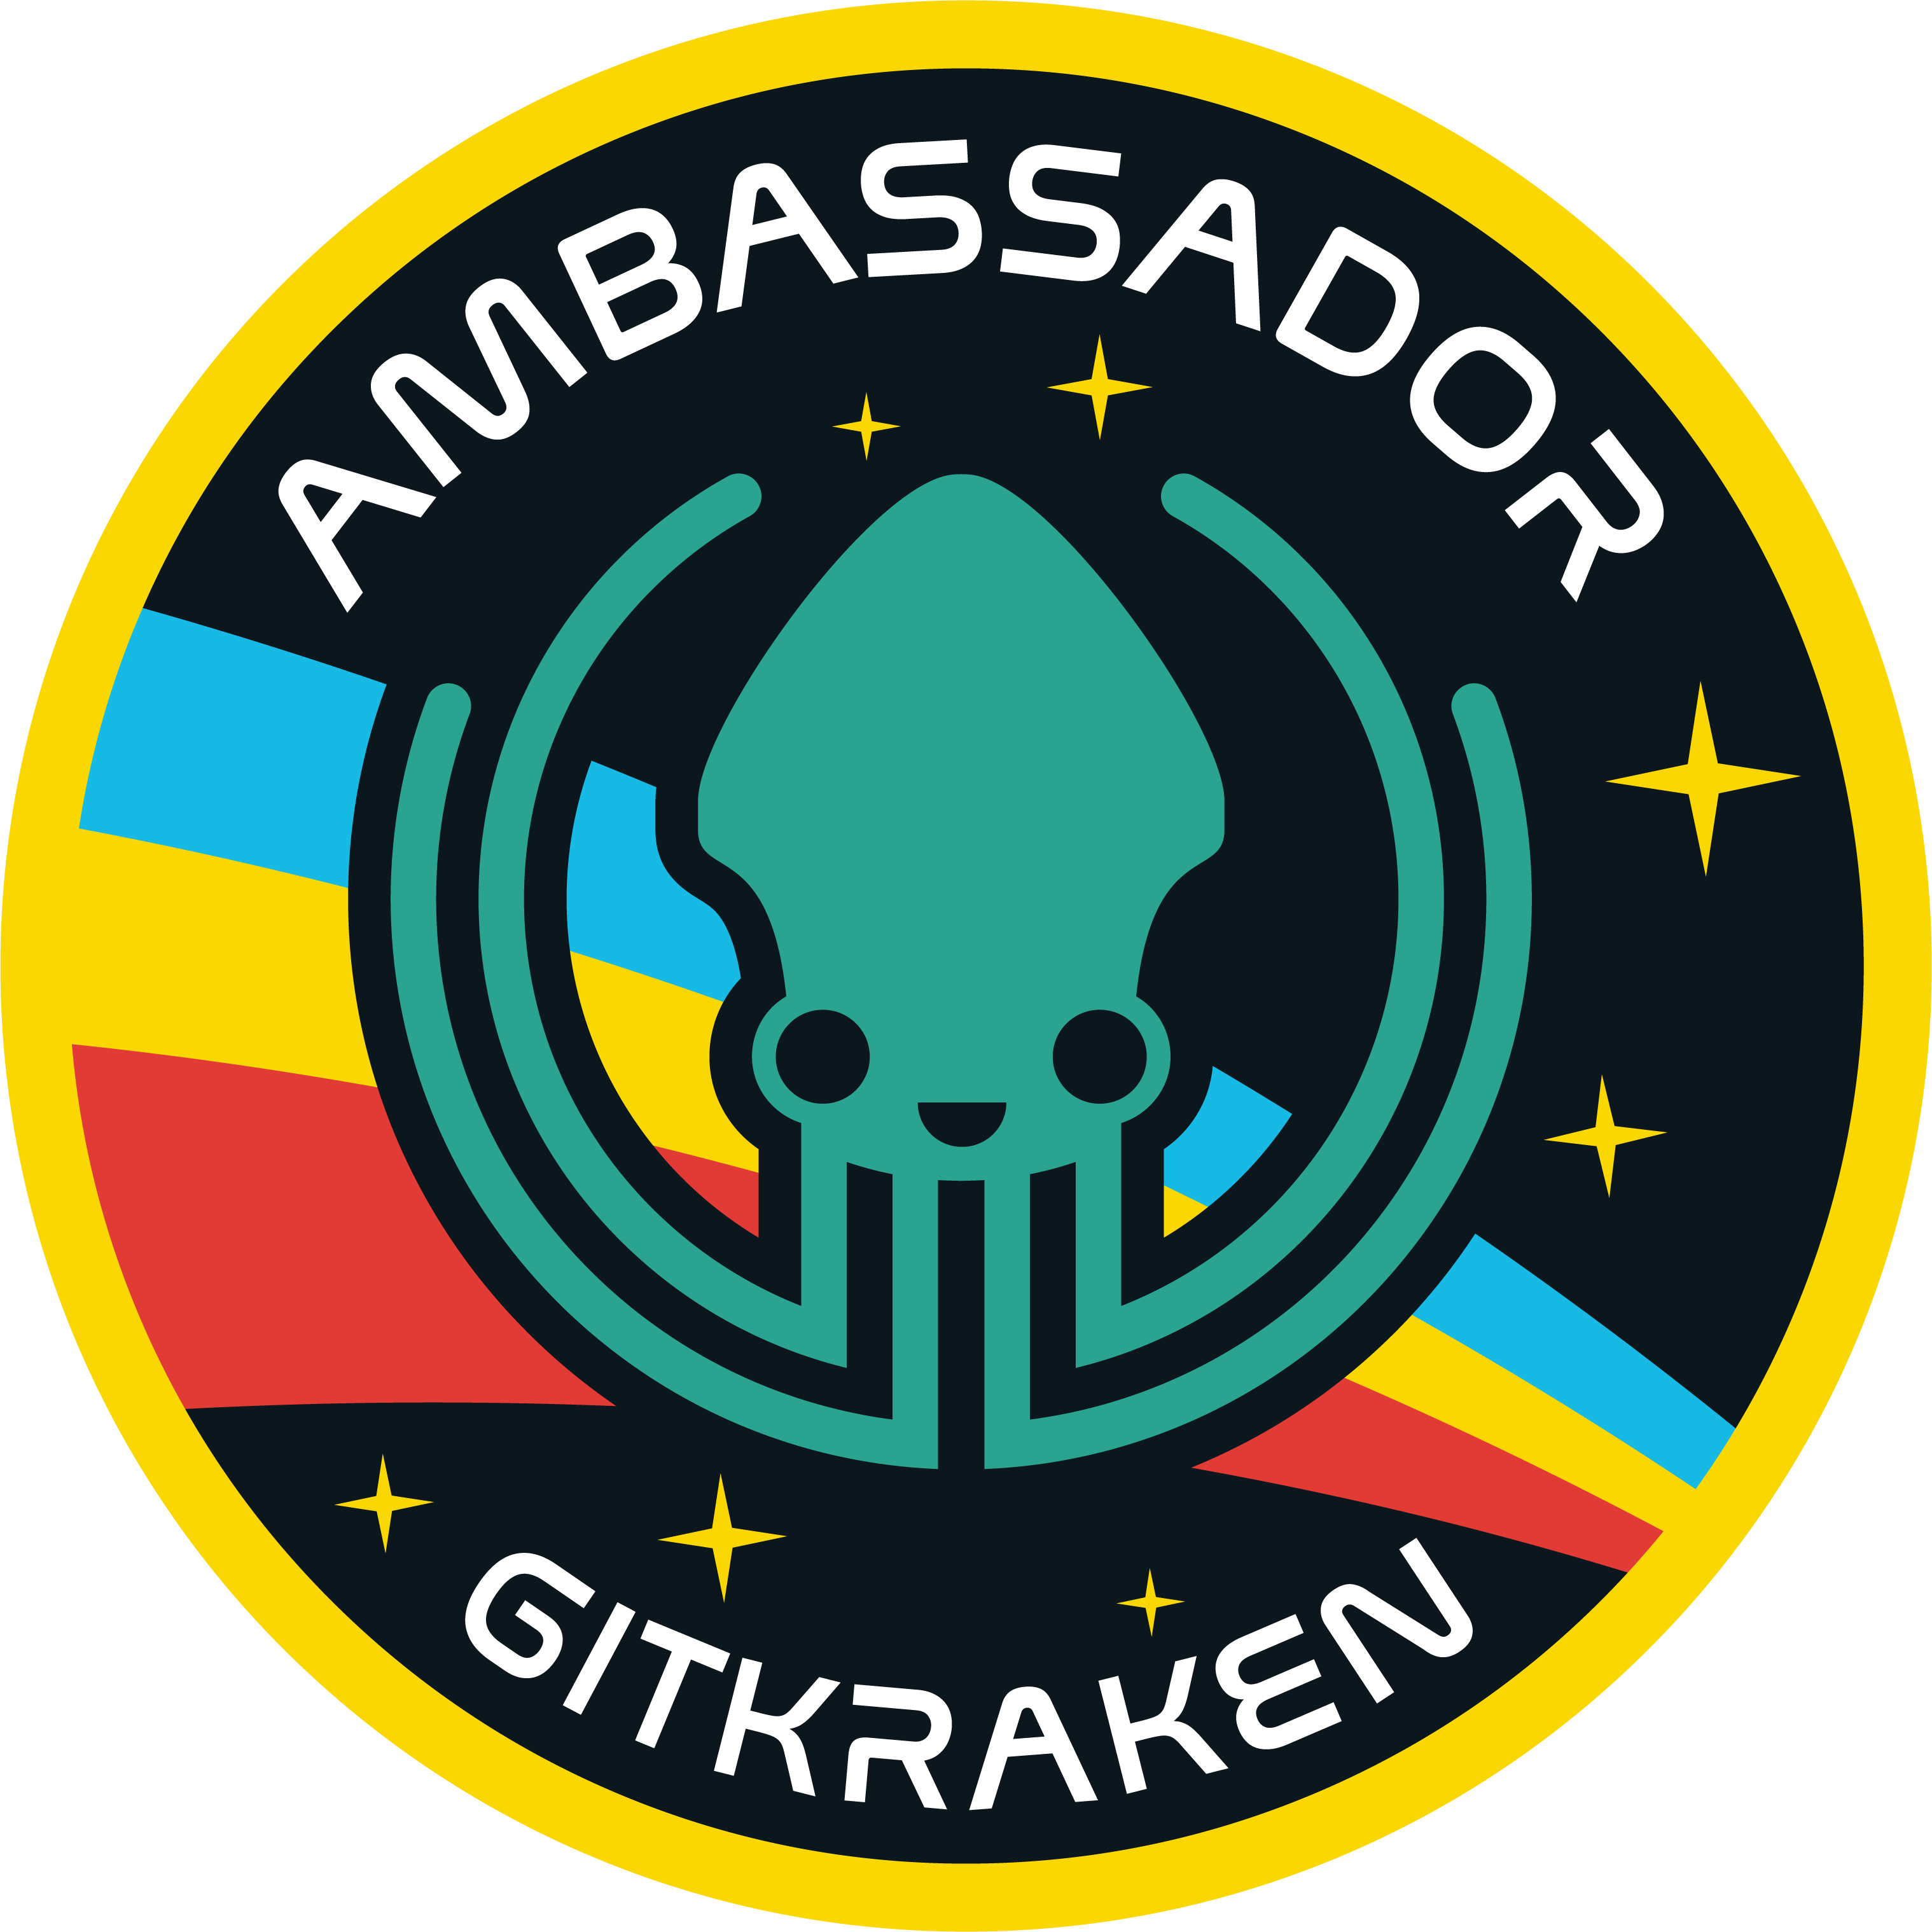 Gitkraken Ambassador logo